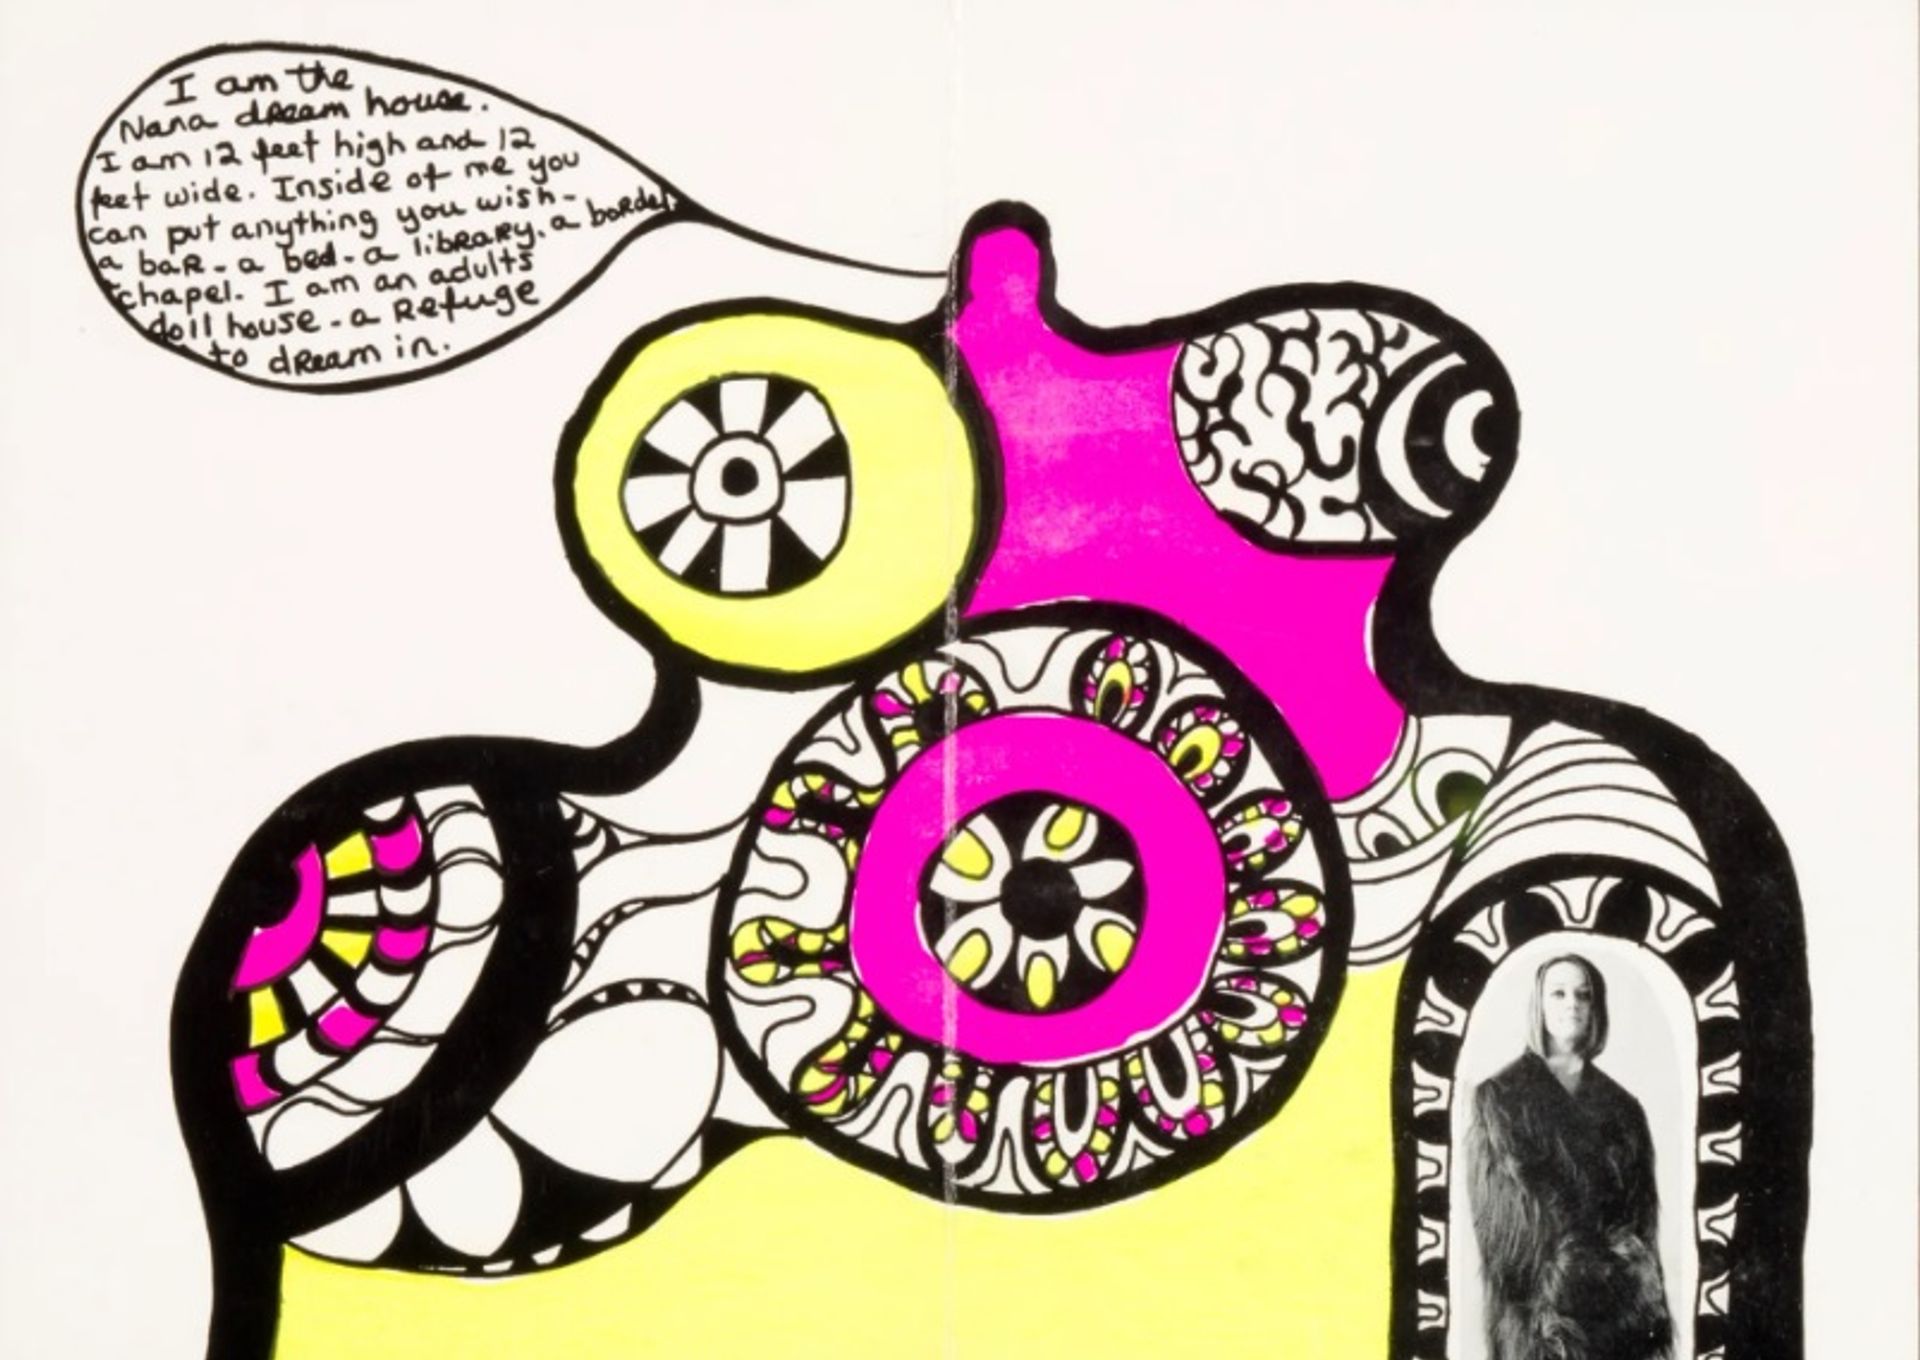 "אני בית החלומות של ננה" של ניקי דה סנט פאלה (1969)

צילום: מוזיאון לאמנות והיסטוריה פריבורג © 2022 Niki Charitable Art Foundation, כל הזכויות שמורות / ProLitteris, ציריך